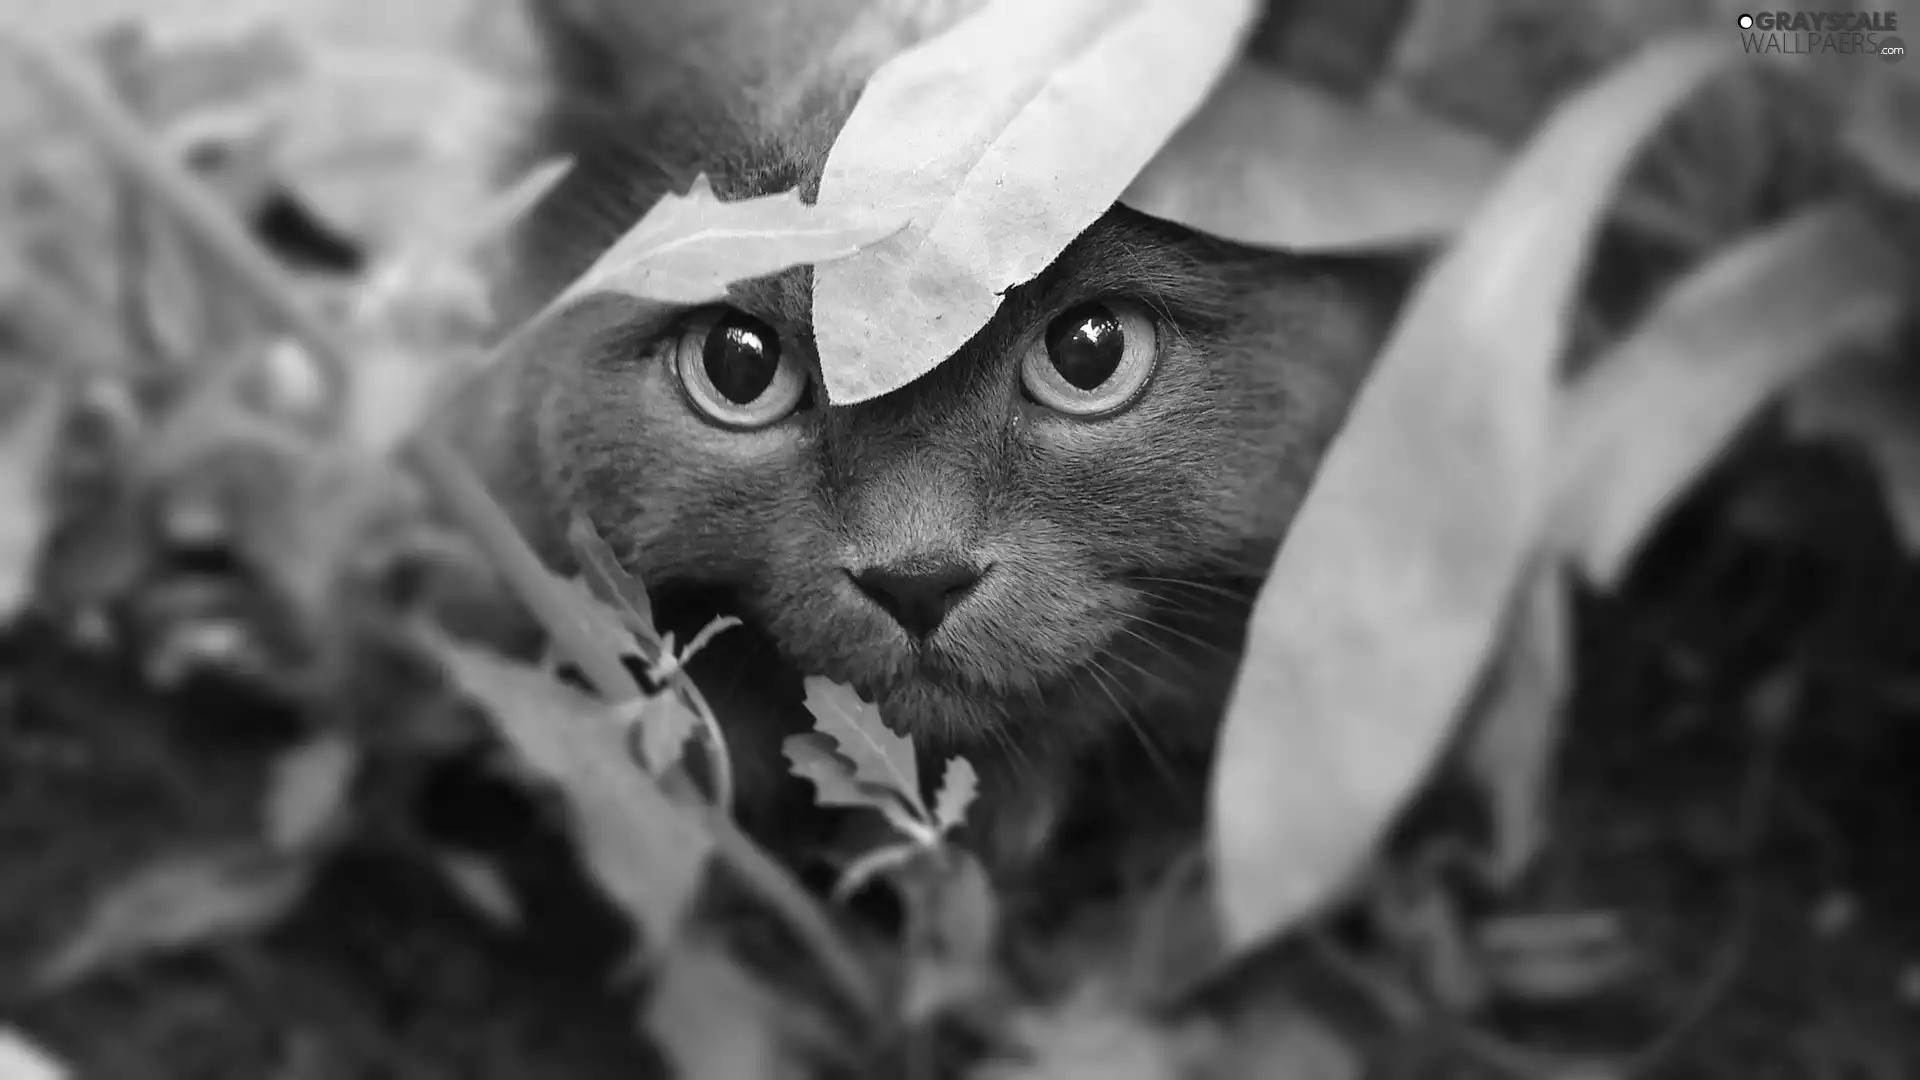 leaves, kitten, Eyes